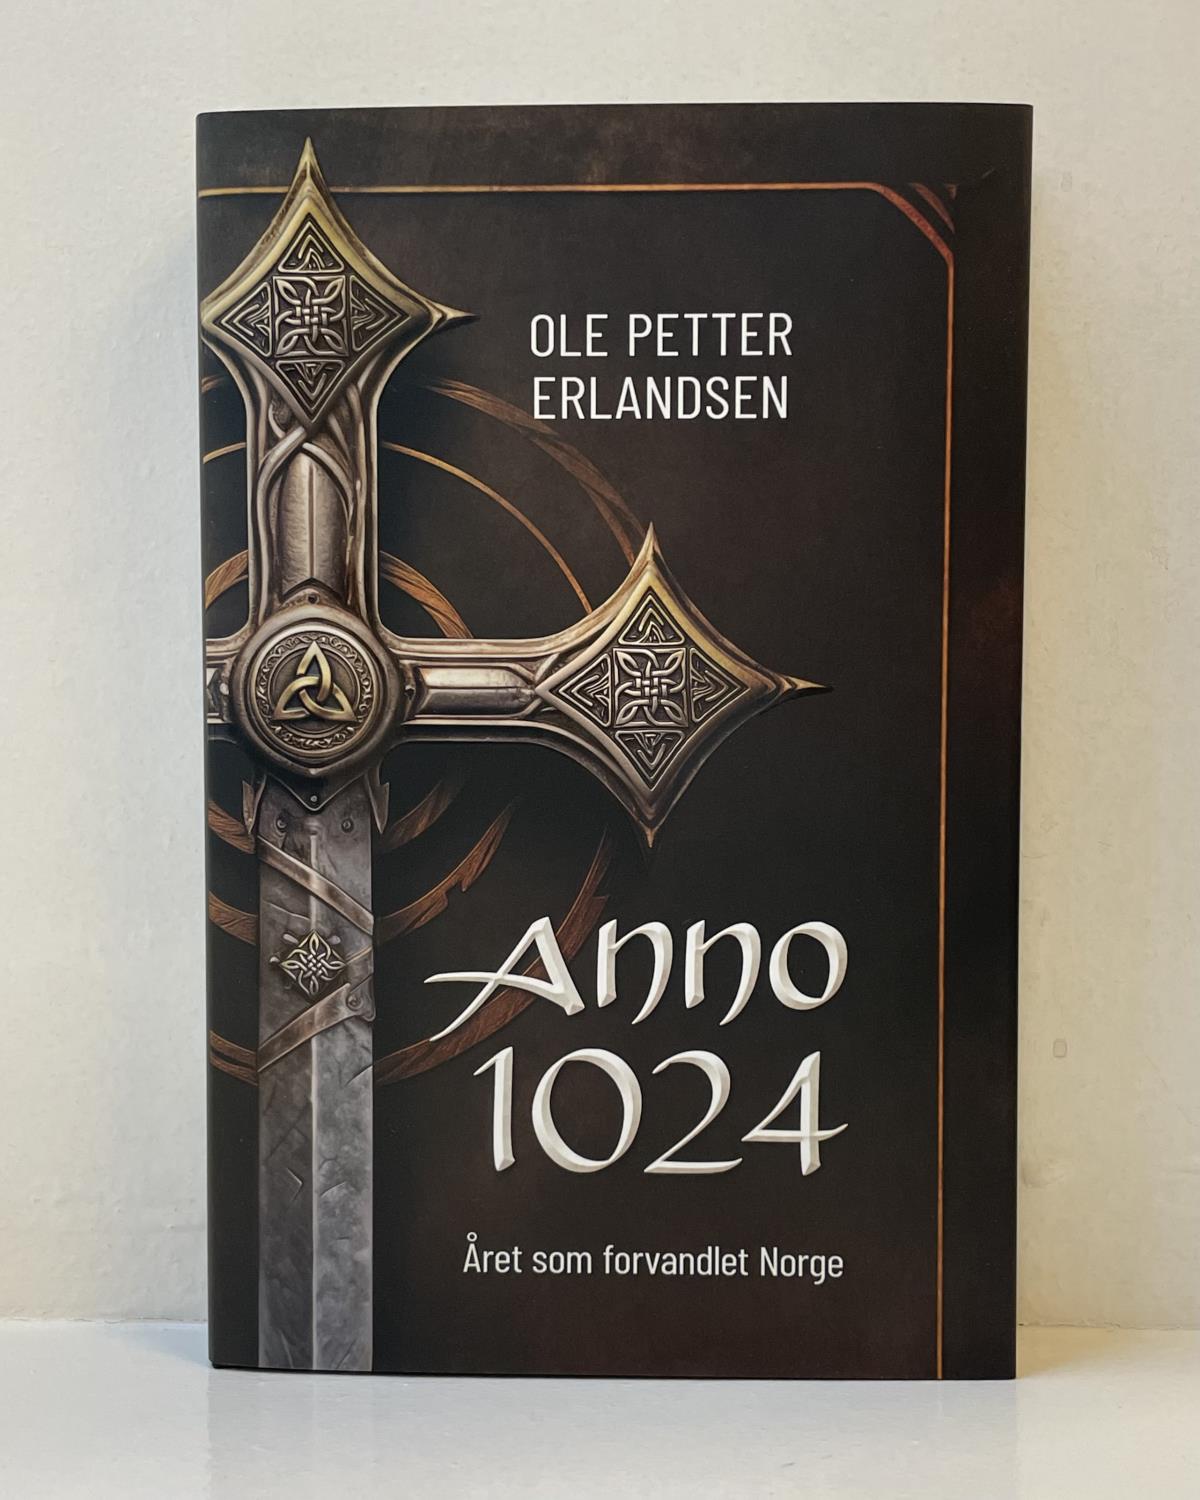 Anno 1024 - Året som forvandlet Norge